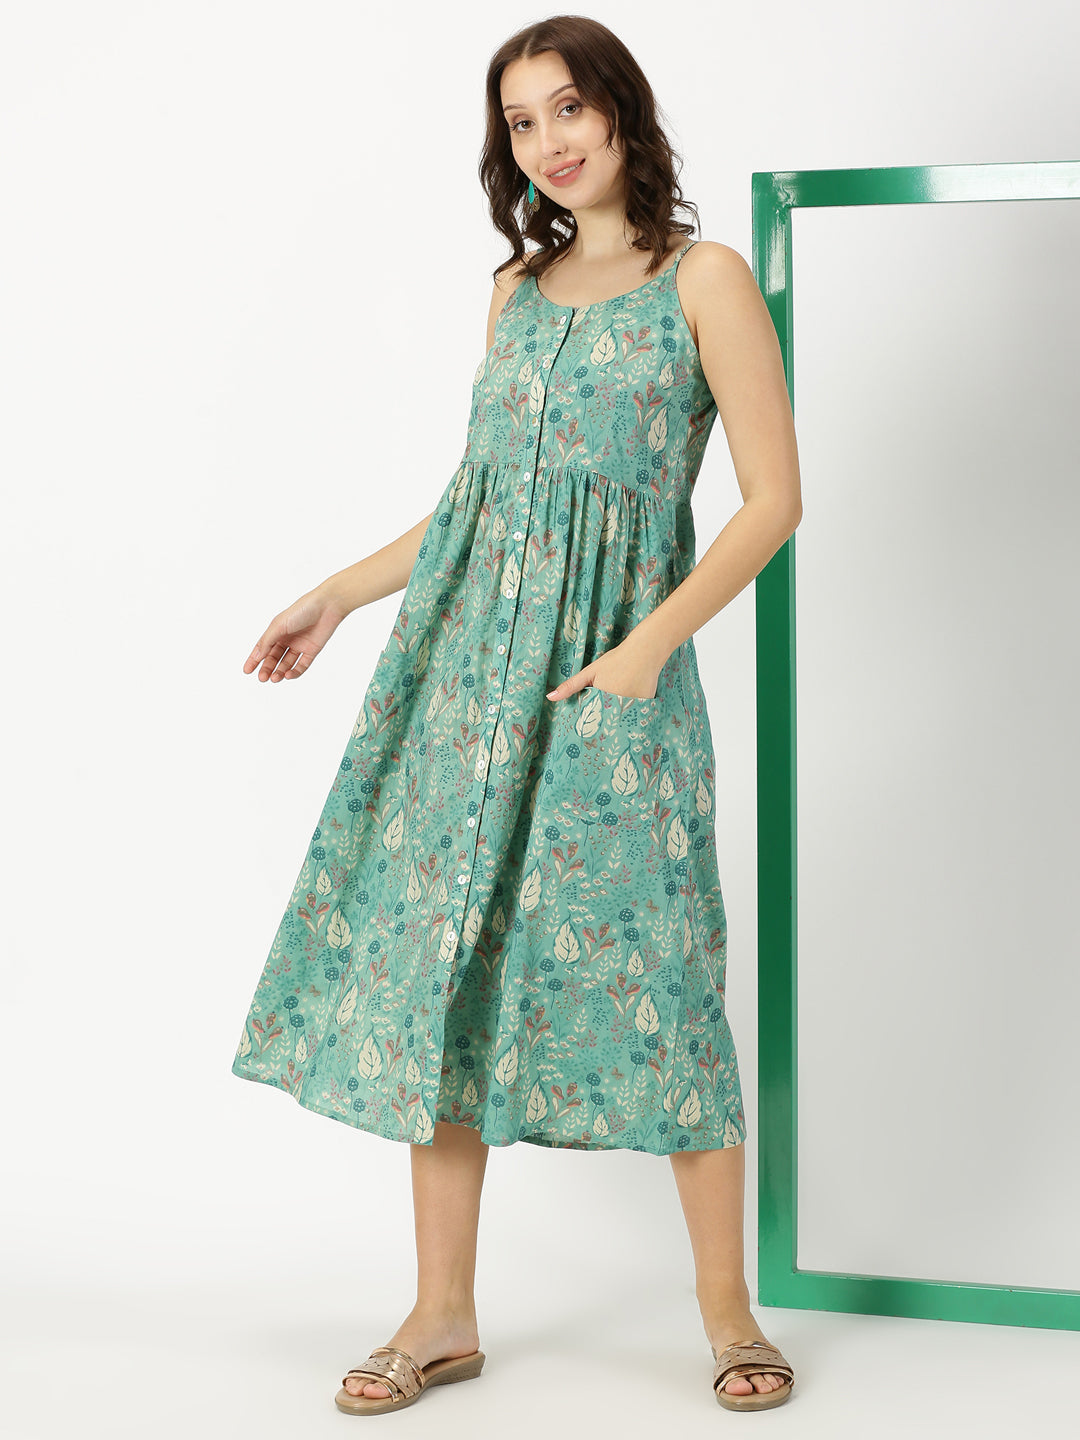 Women Dresses - Buy Women Dresses Online Starting at Just ₹172